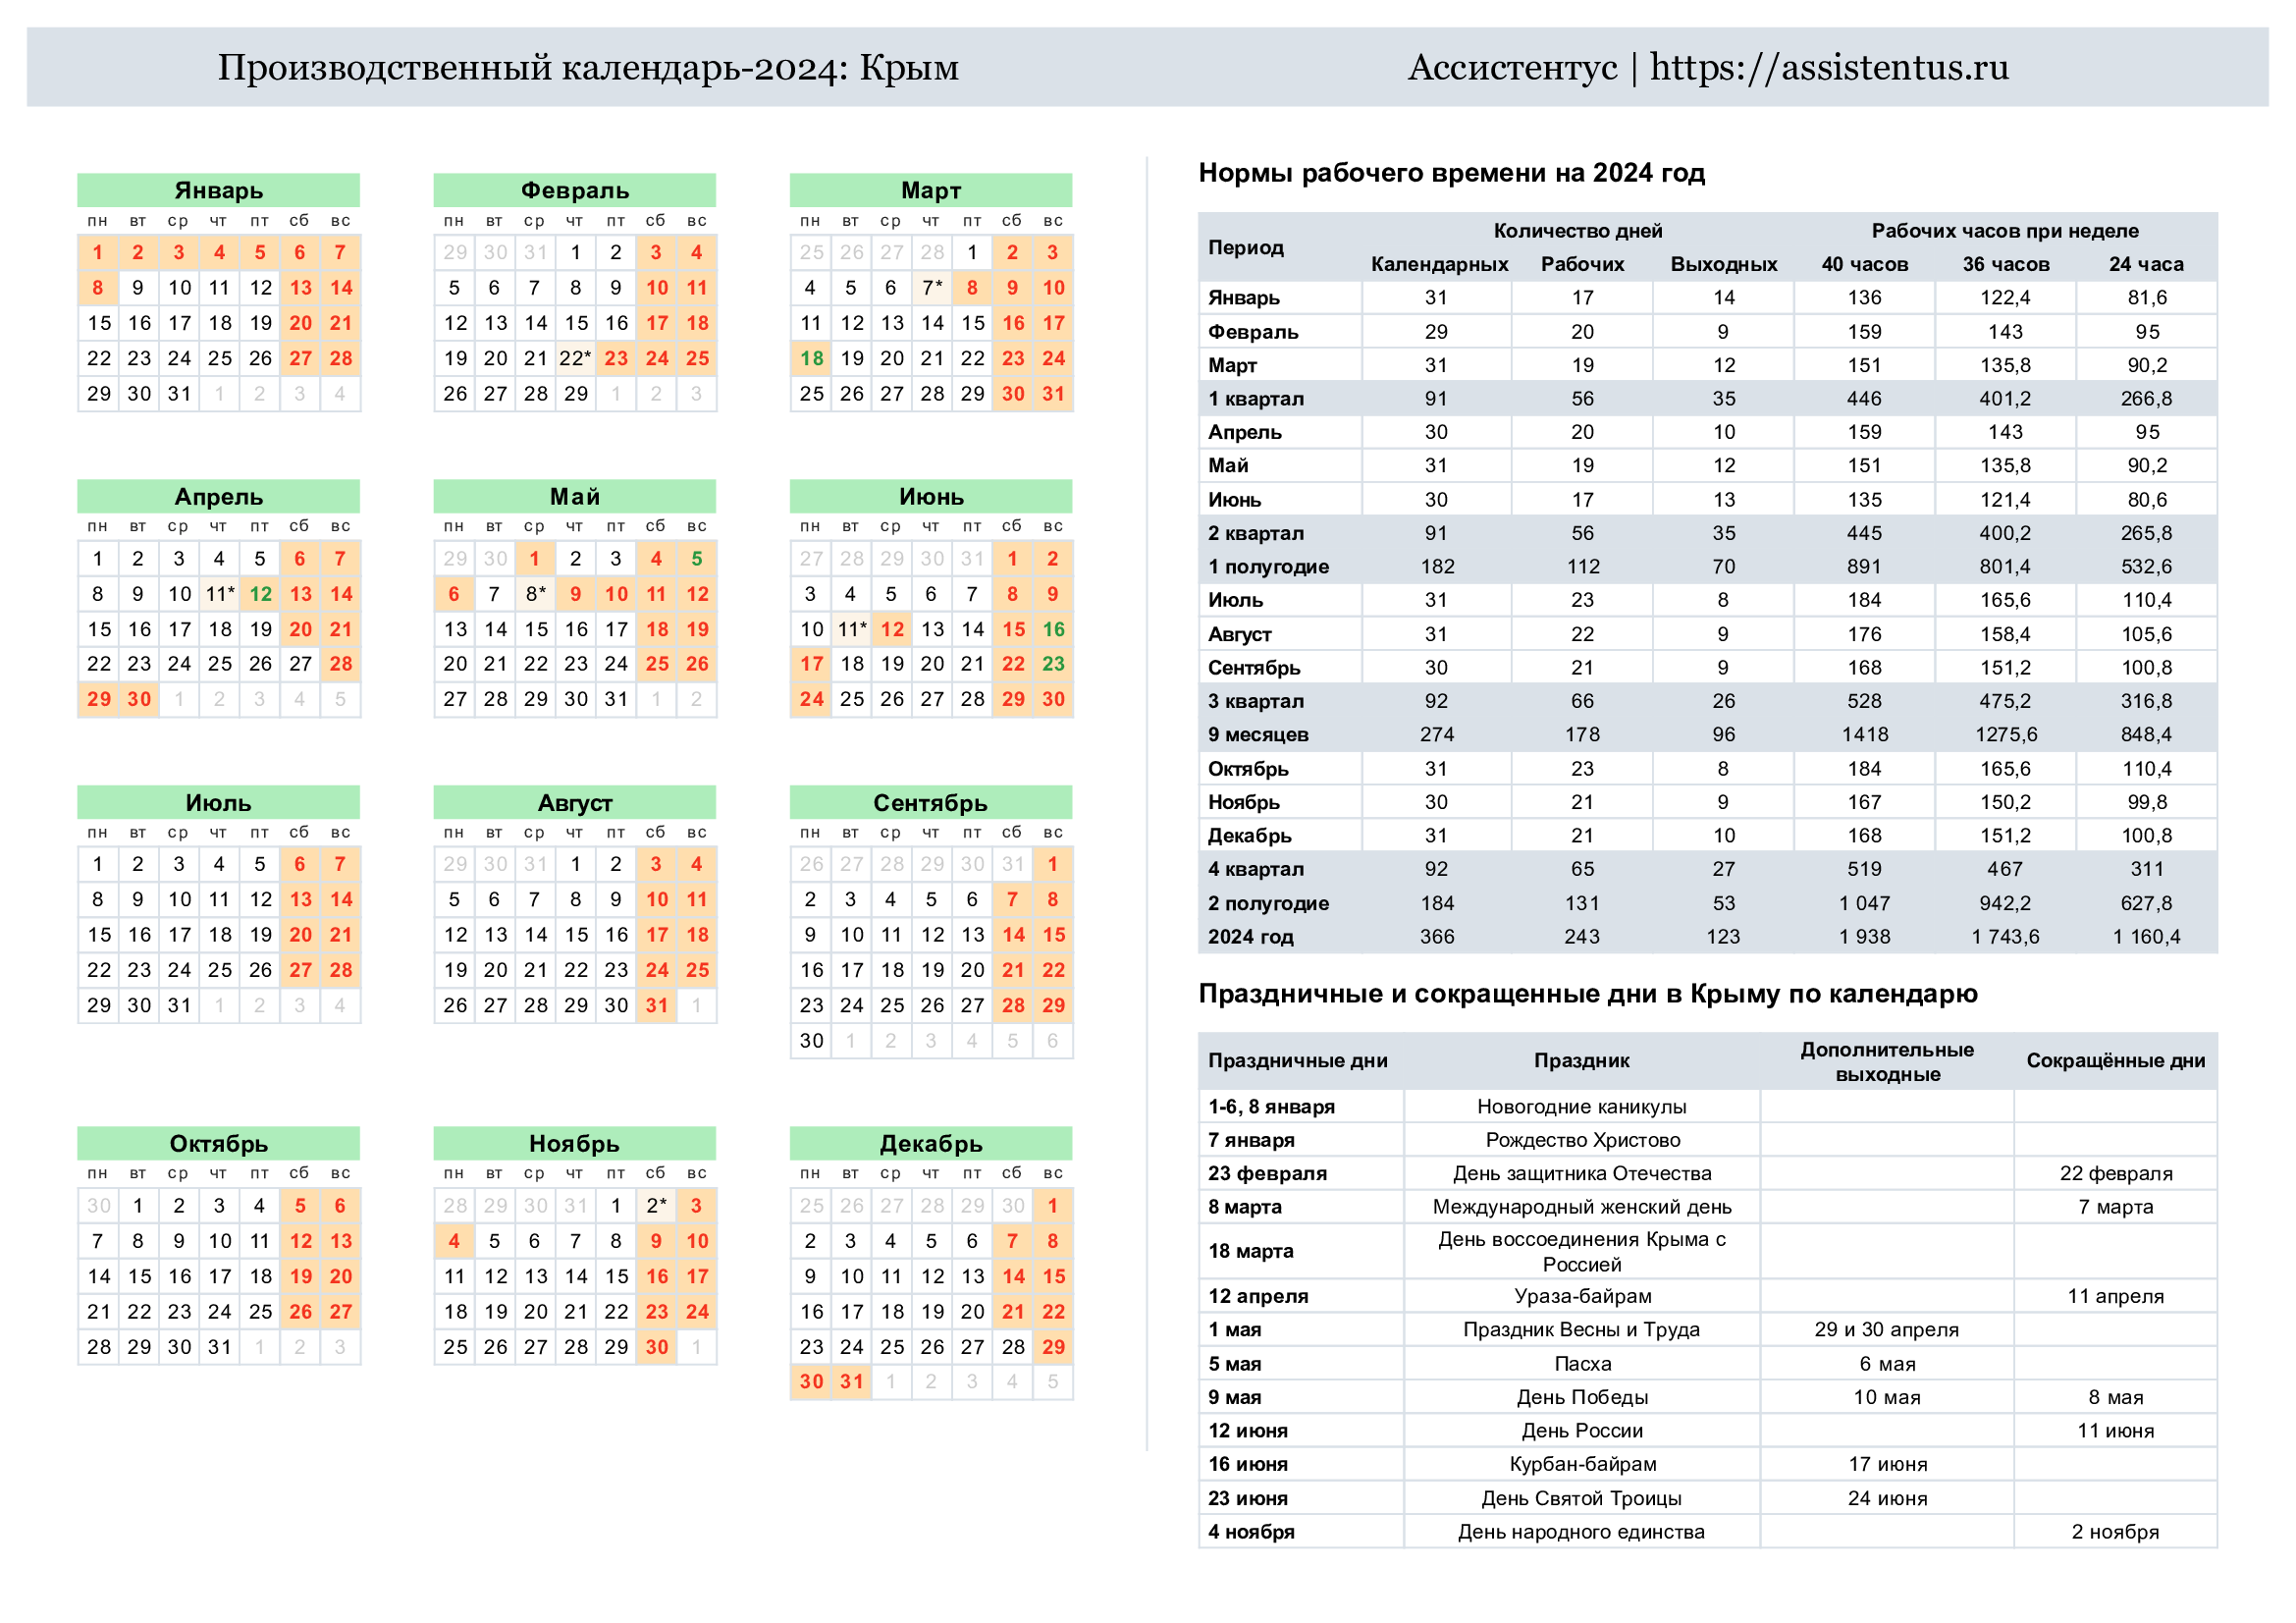 Производственный календарь Крыма 2024